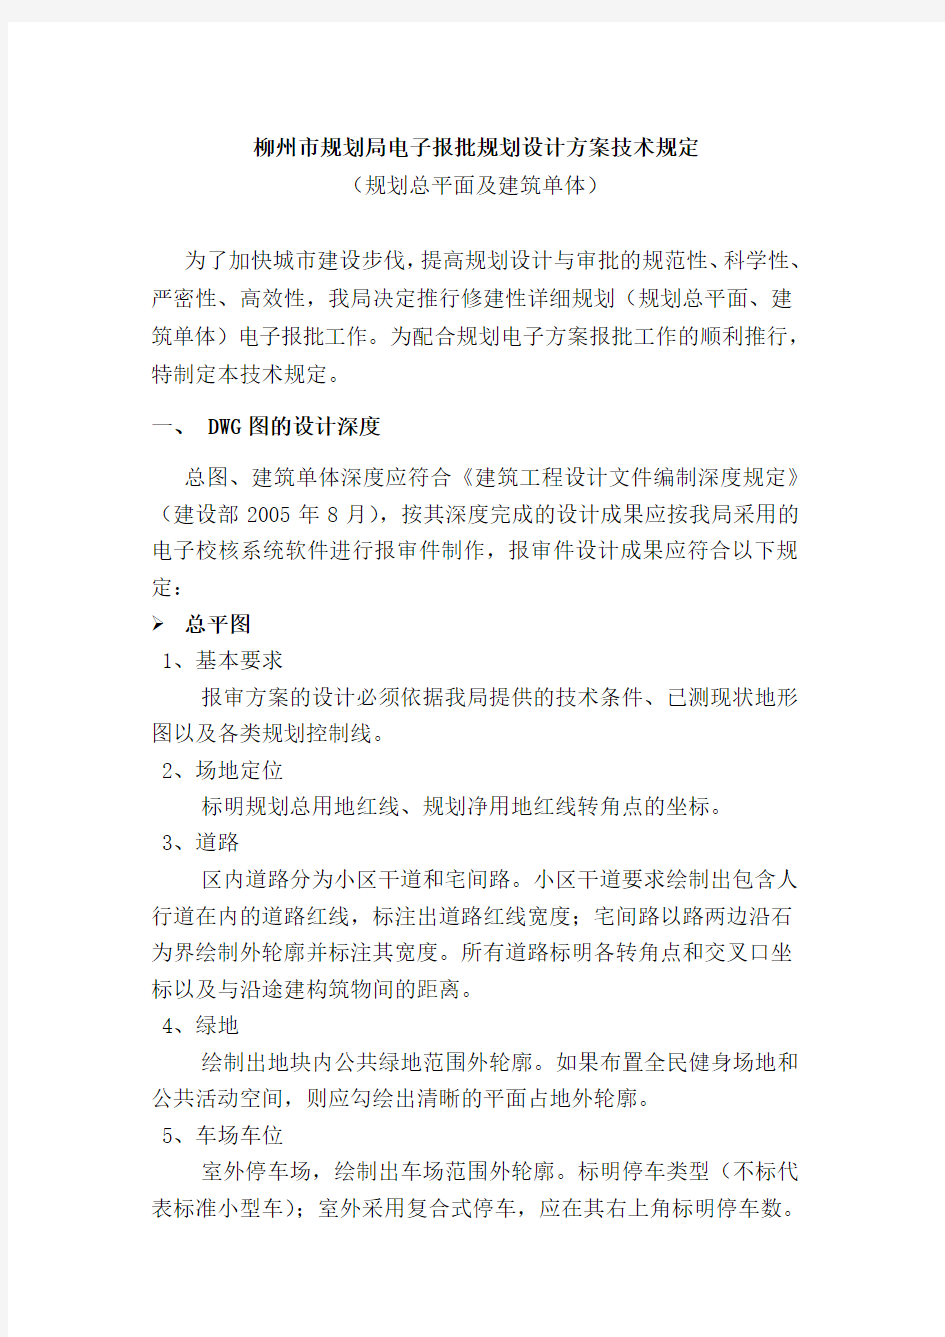 柳州市规划局电子报批规划设计方案技术规定(最终)